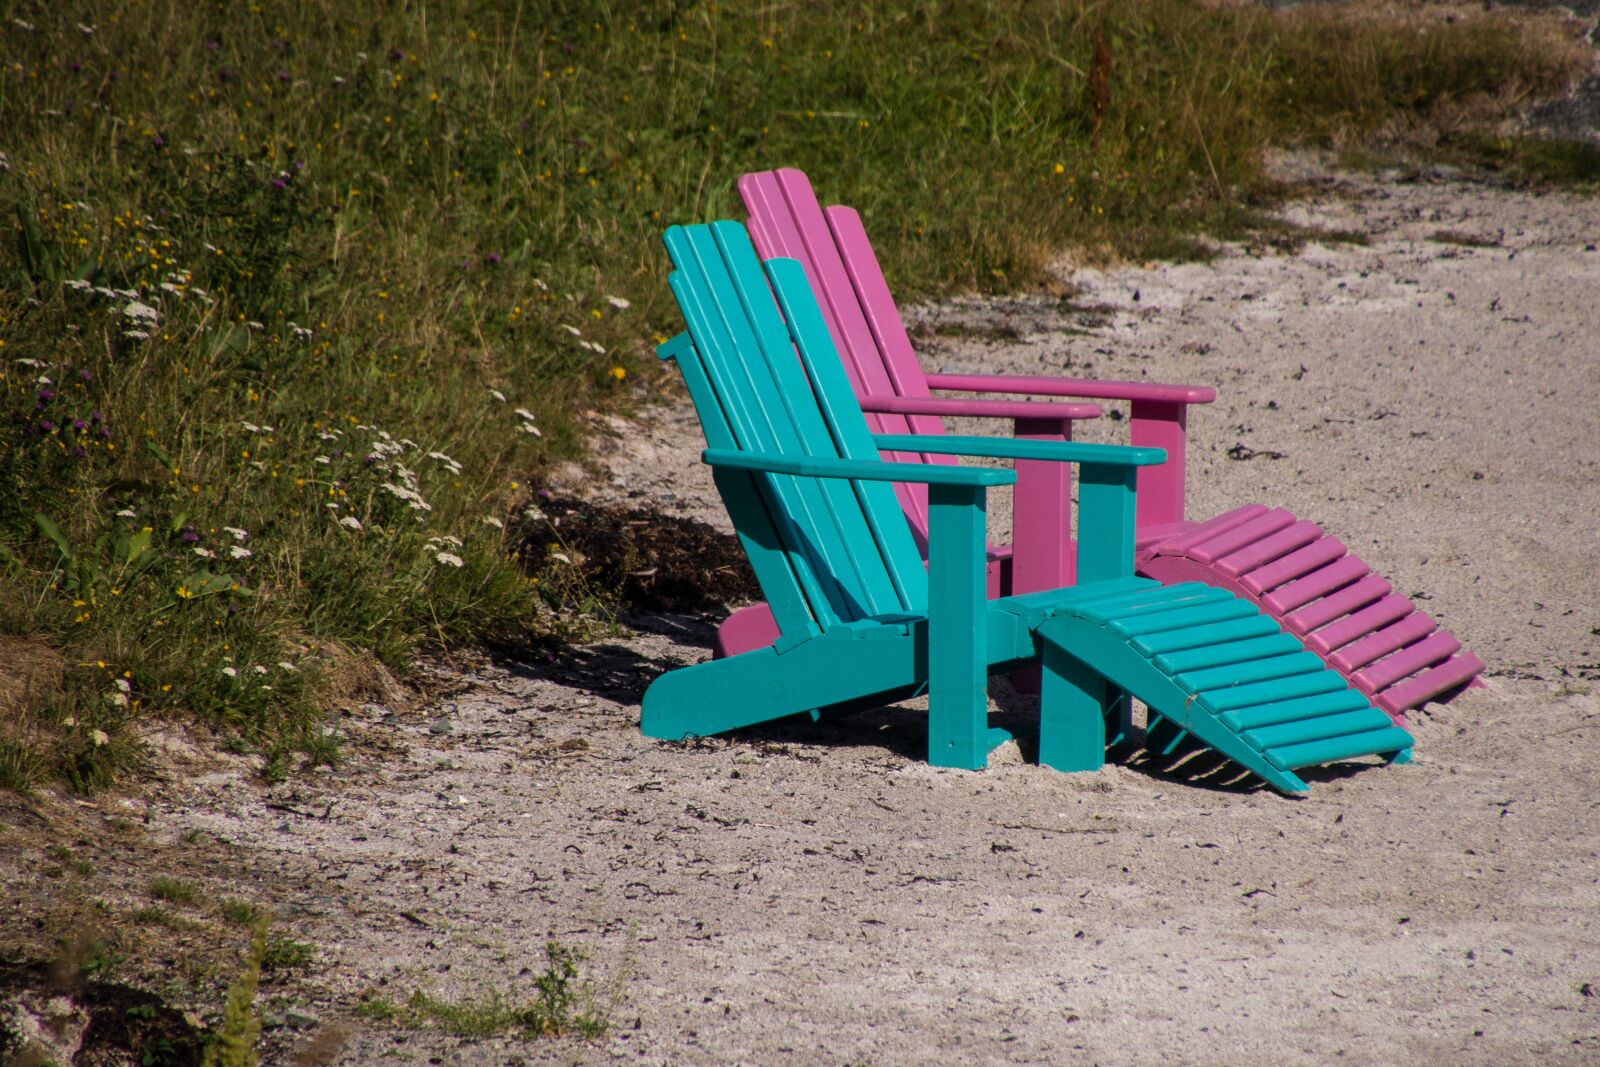 Sony a99 II sample photo. Beach, chair, summer photography